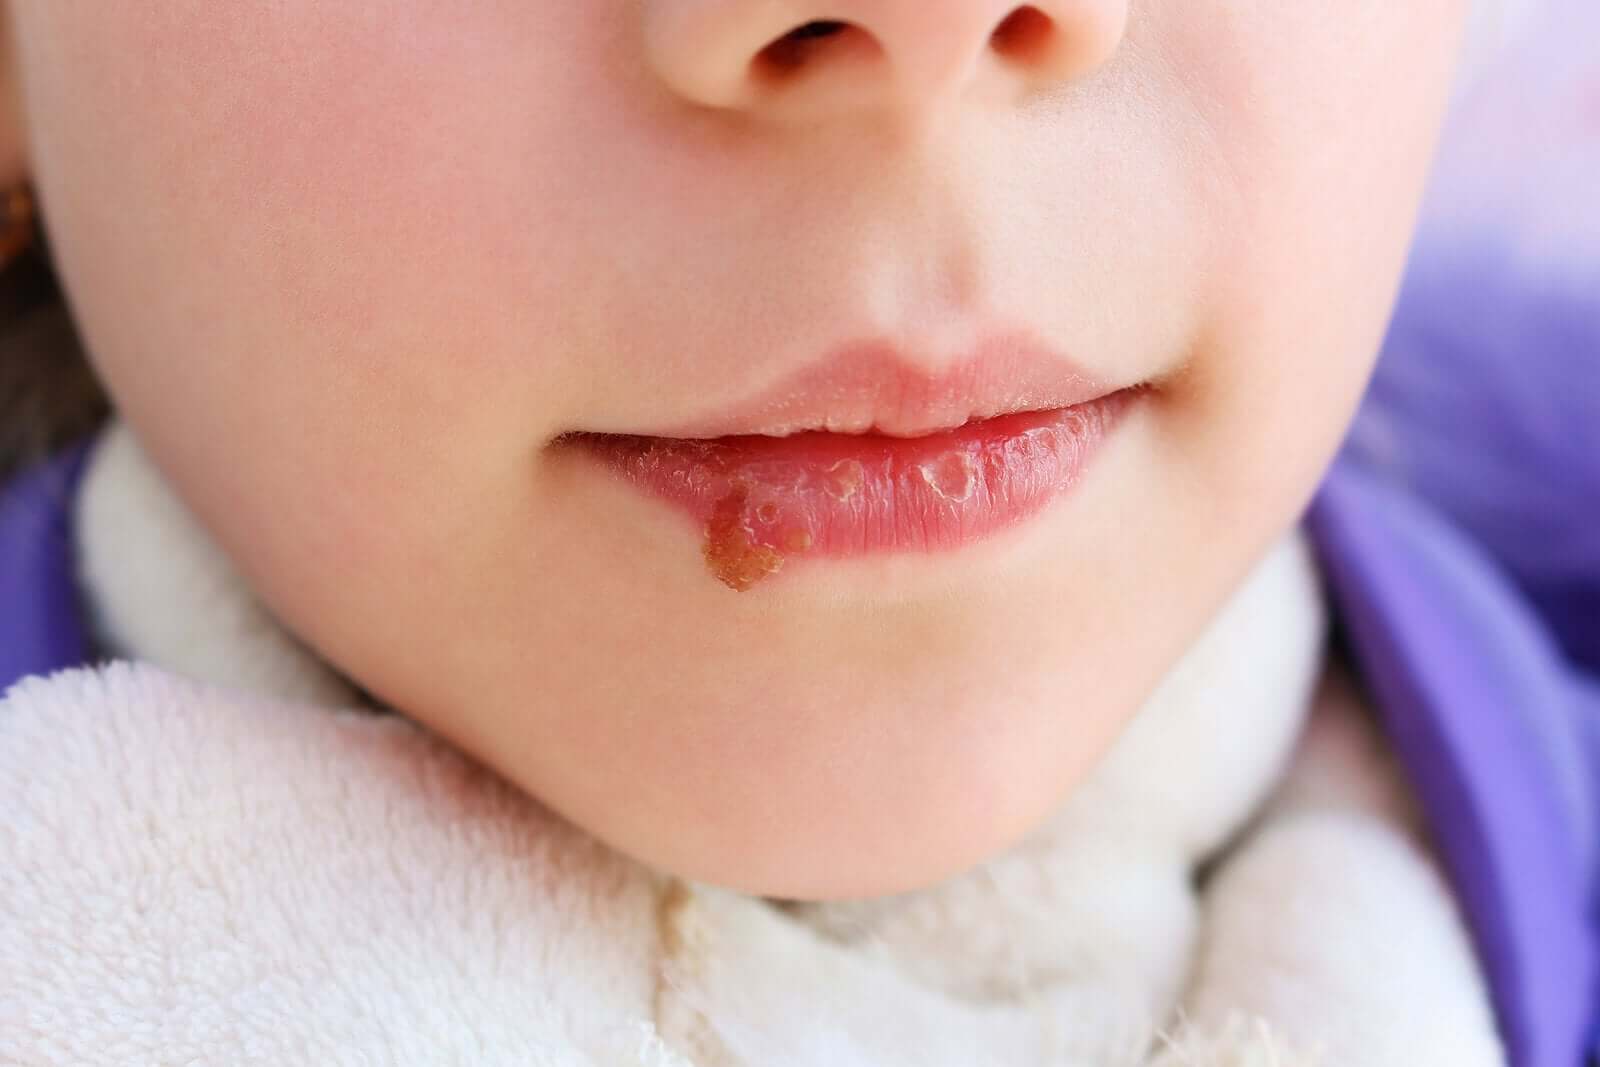 Ett barn med ett munsår i munnen.